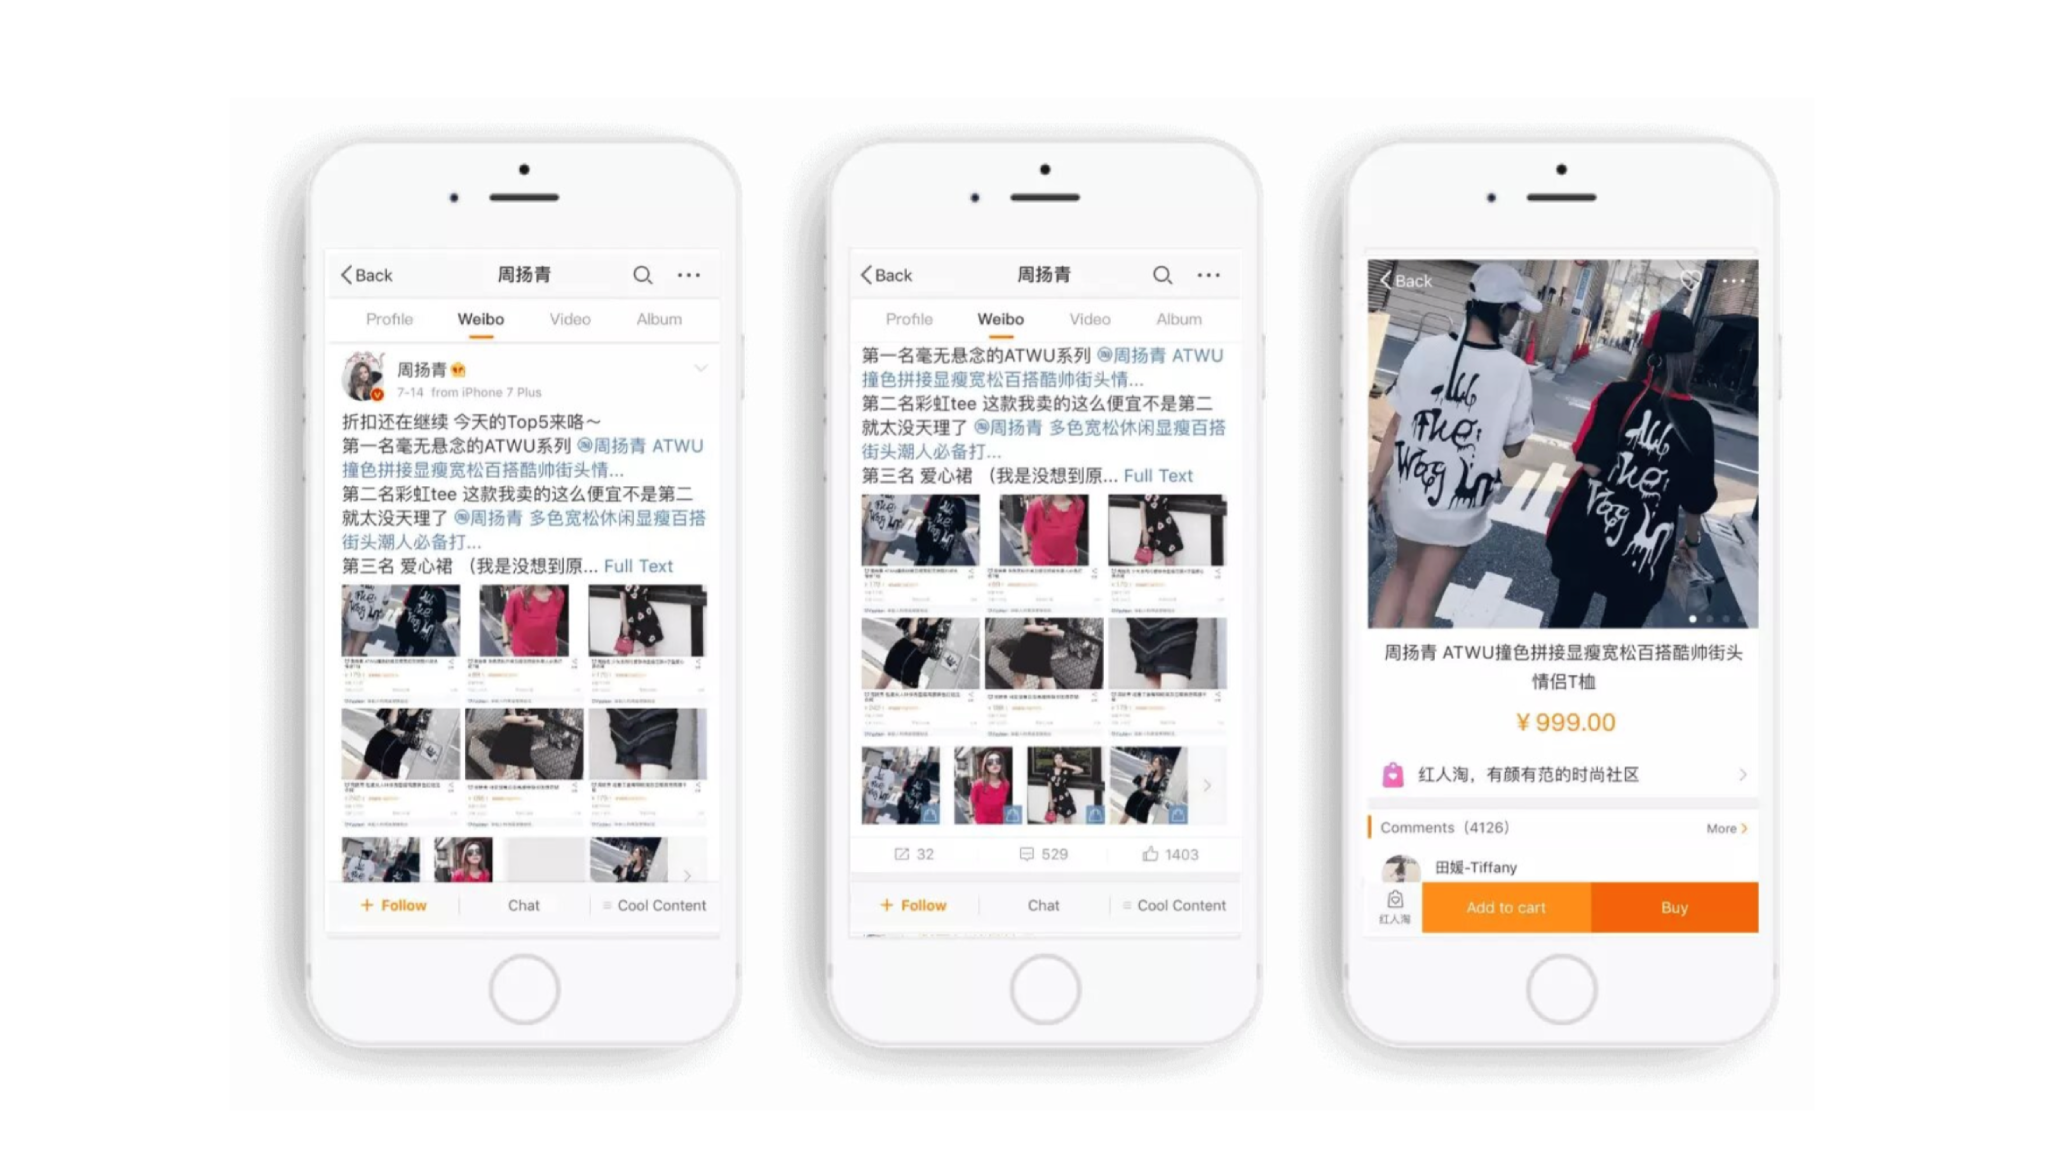 Функция Weibo Window позволяет запускать прямые продажи. Источник: https://as-pacific.com/blog/category-kitayskiye-sotsialnyye-seti-i-messendzhery/akaunt-v-weibo-registracia-i-prodvijenie/#n9